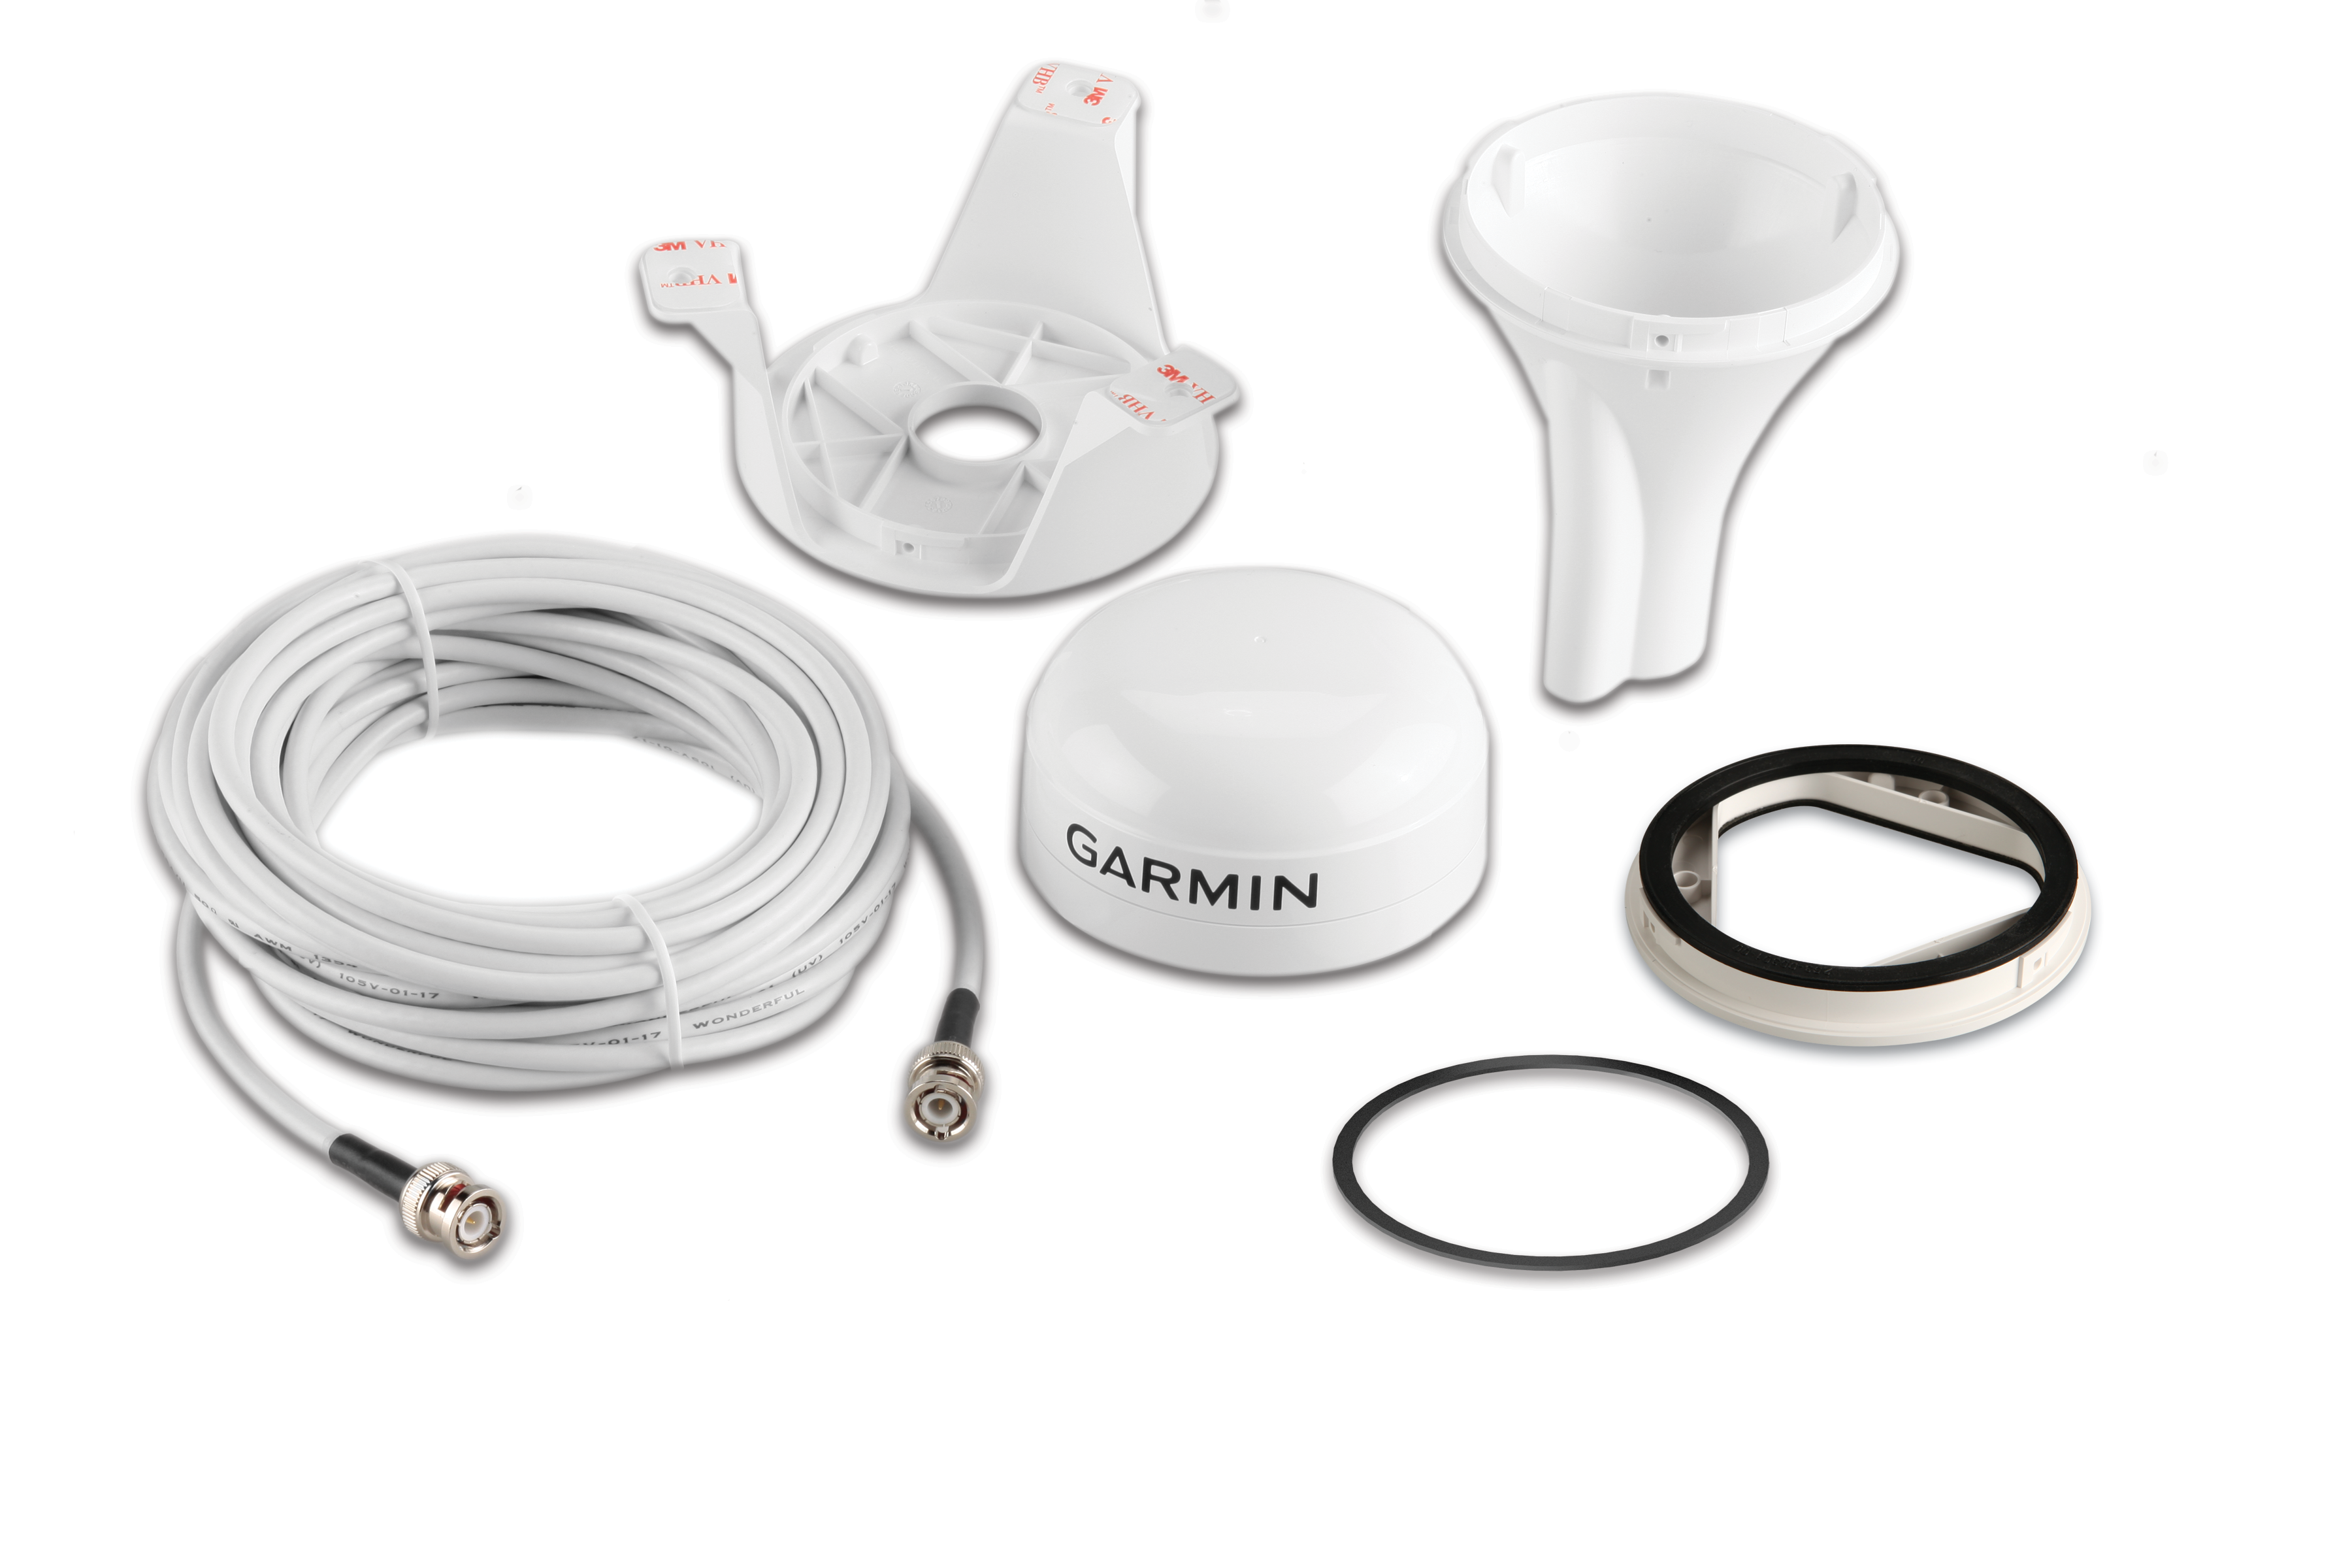 Garmin GA™ 38 GPS- og GLONASS-antenne til Garmin VHF, AIS og kortplottere, hvid